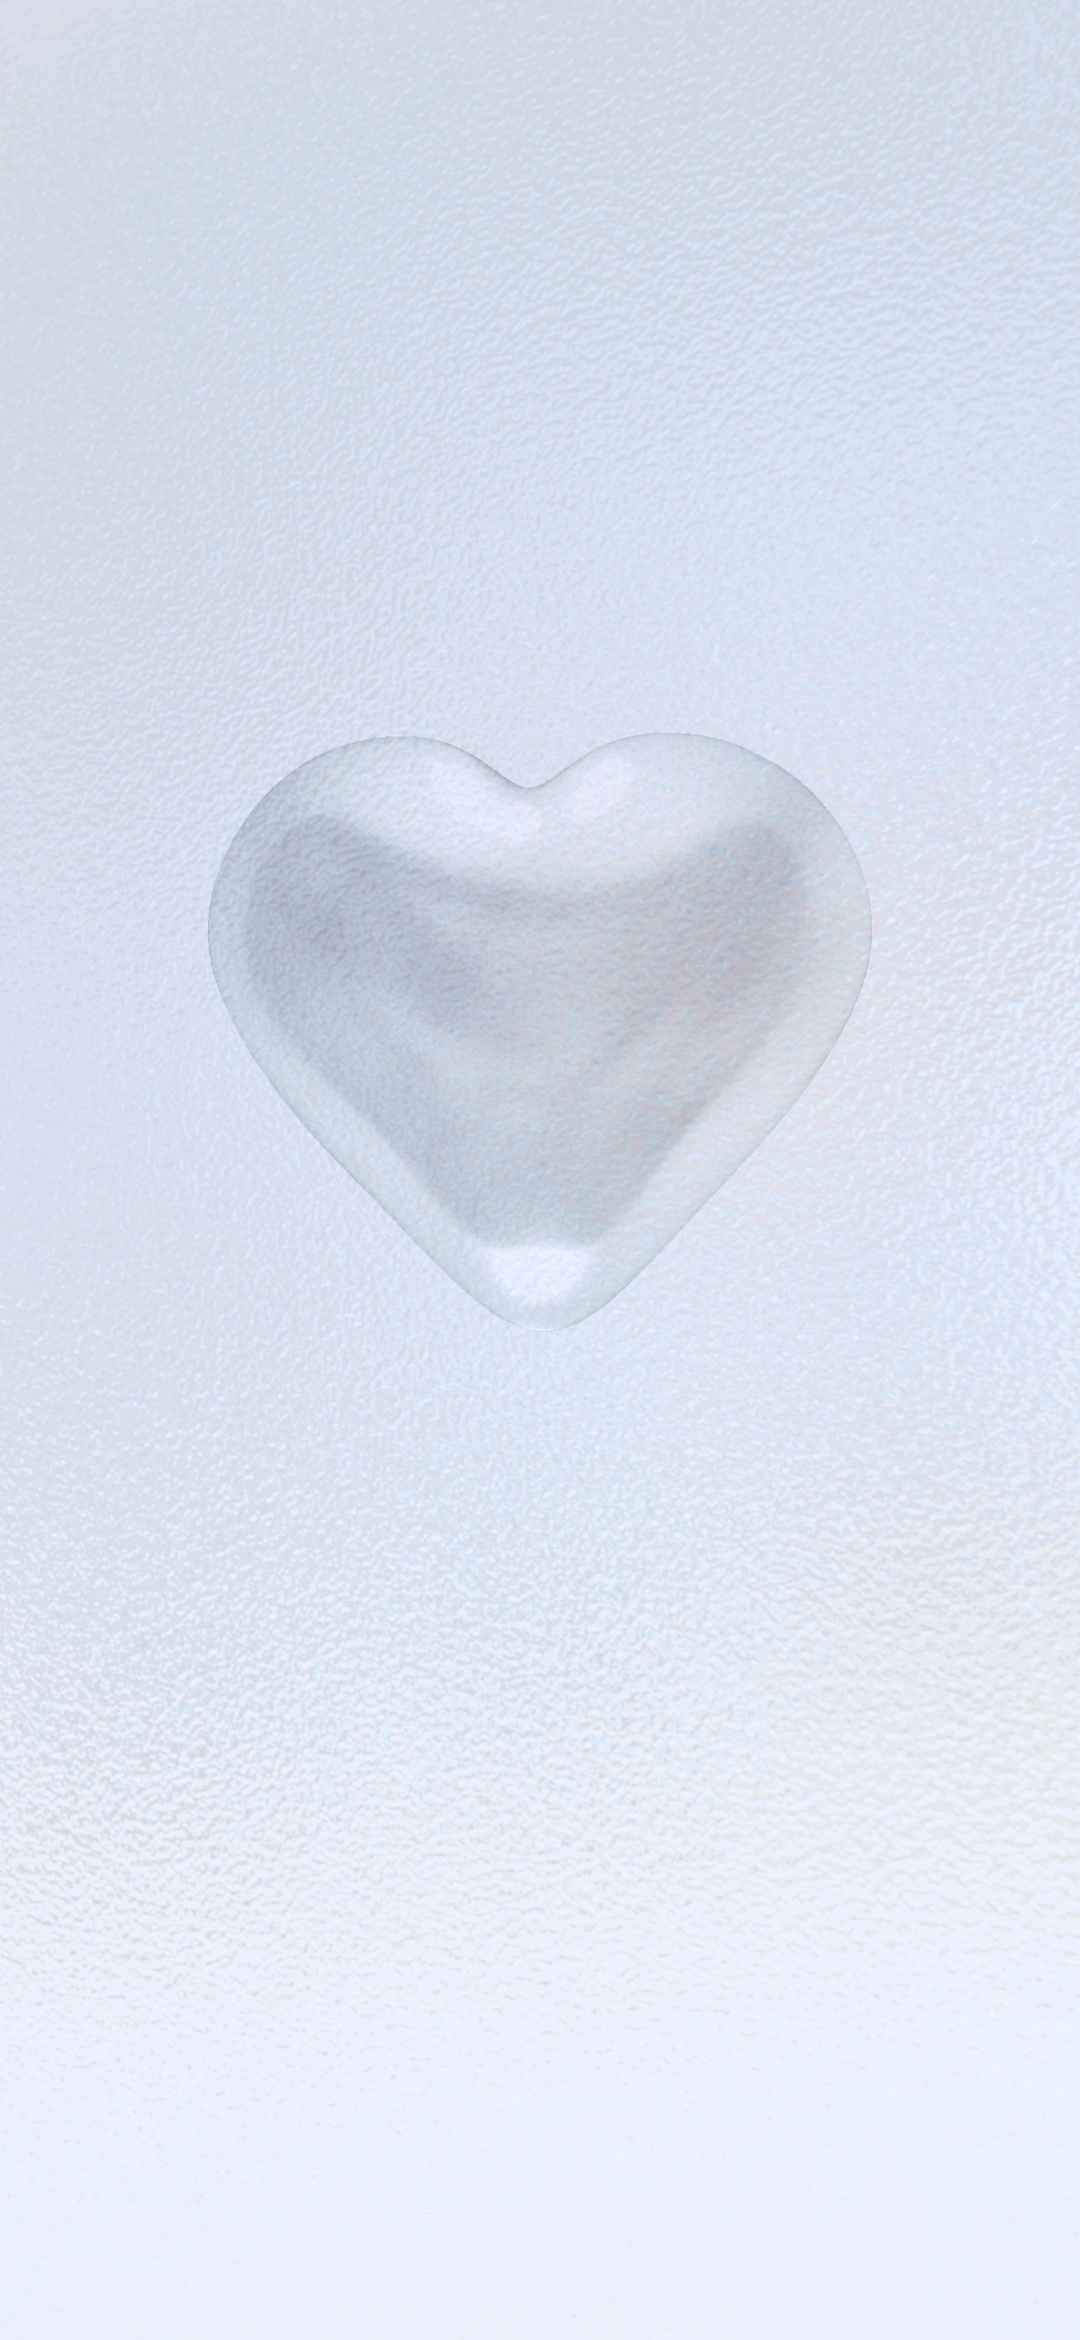 心形玻璃磨砂质感的壁纸-